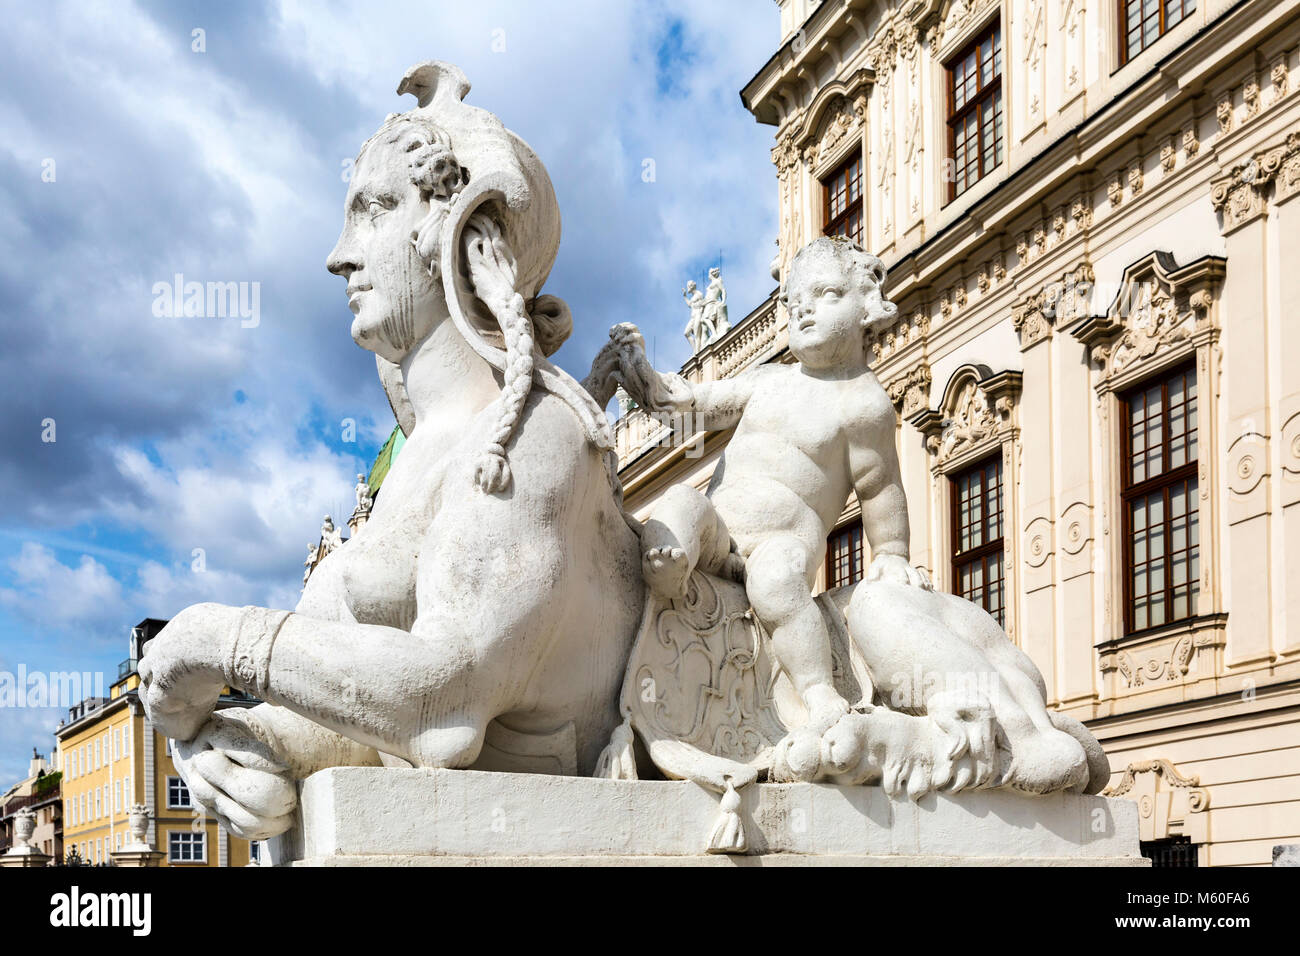 Sphinz Skulptur mit einem Cherub, Schloss Belvedere, Wien, Wien, Österreich. Stockfoto